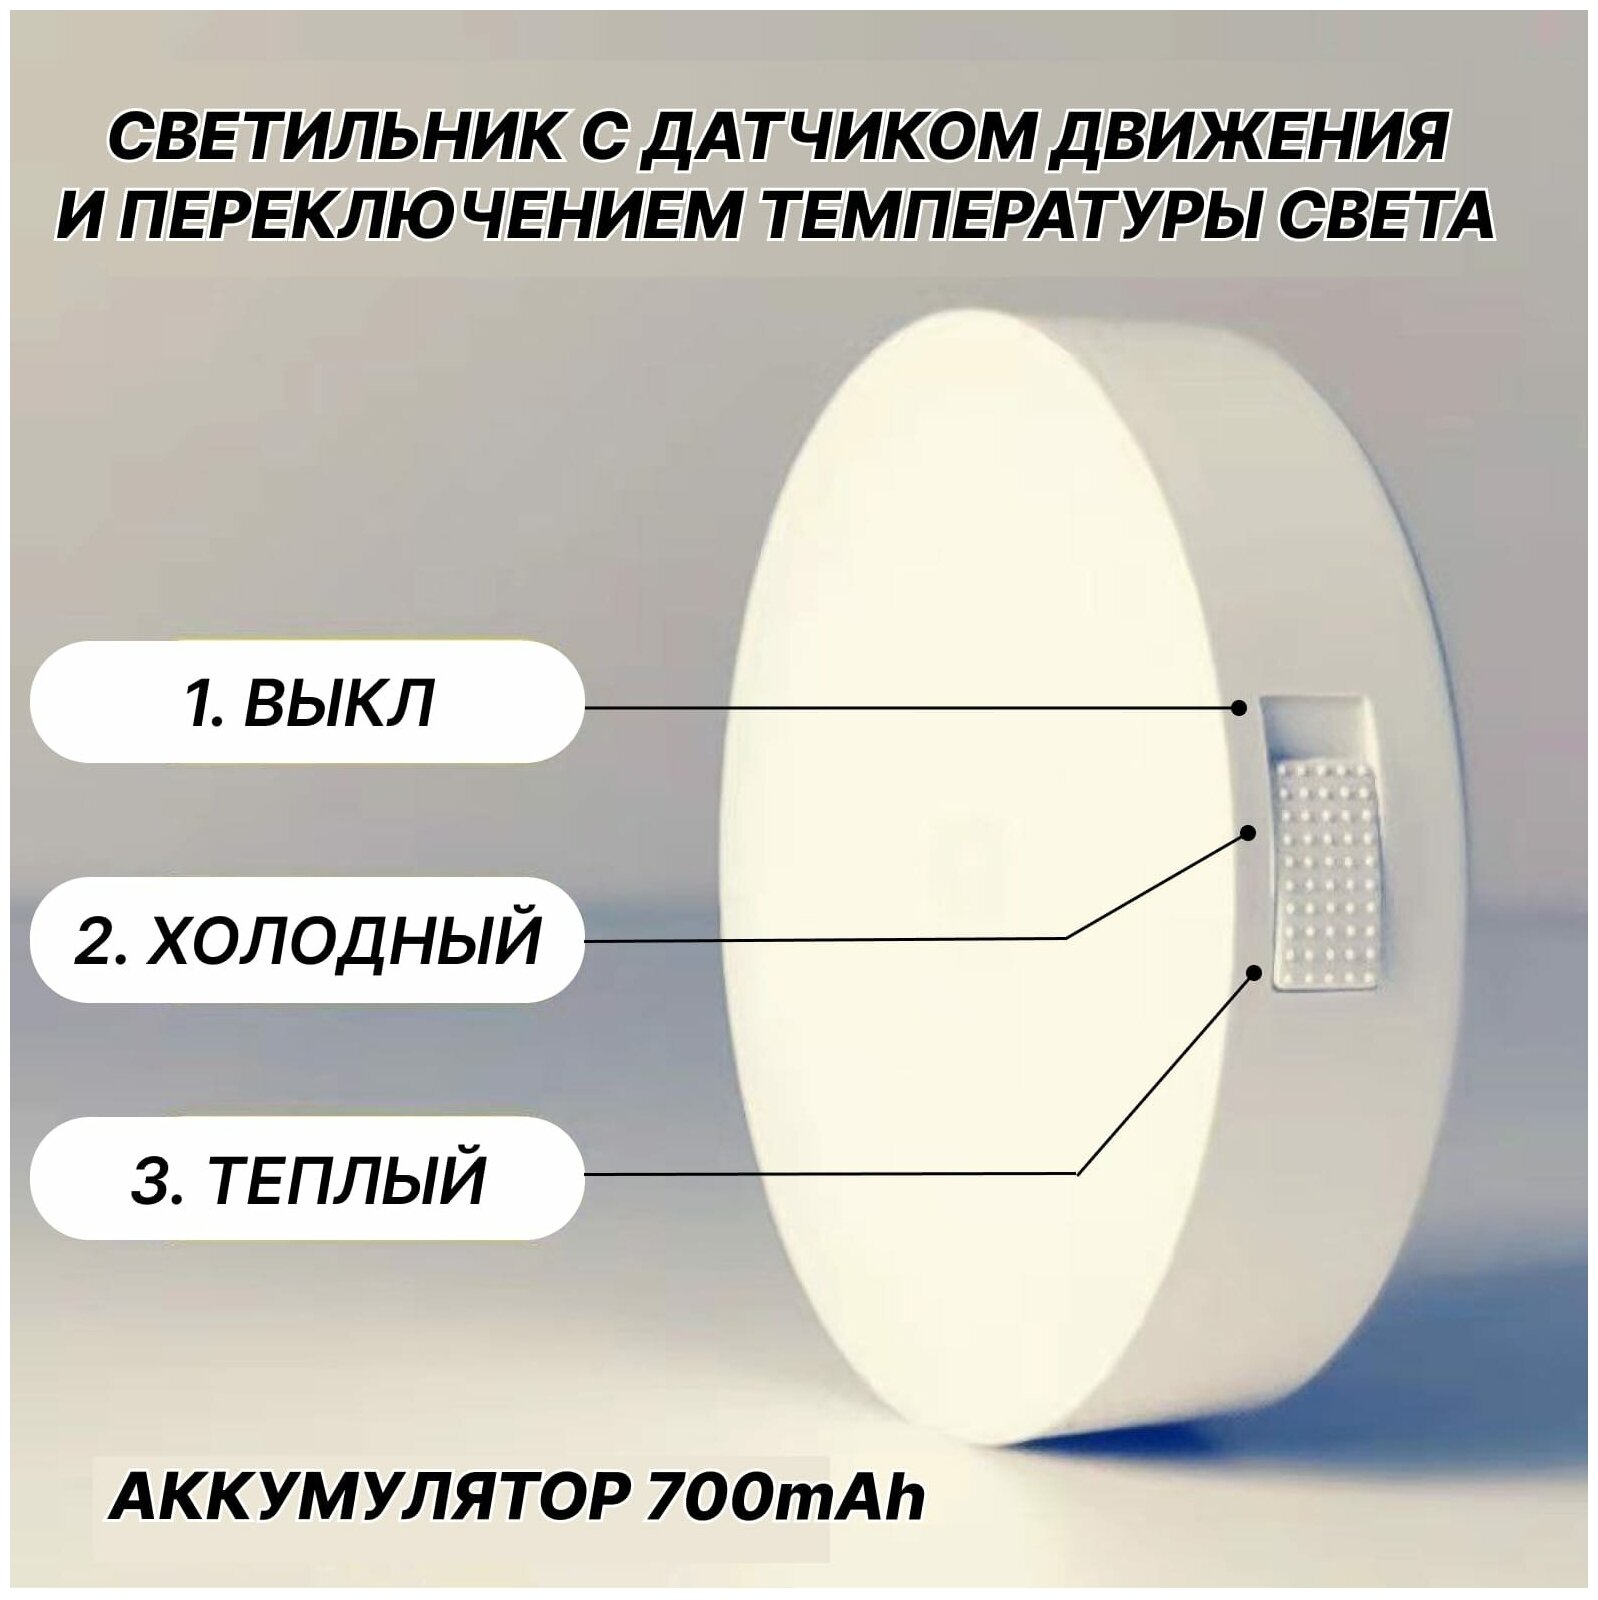 Беспроводной светодиодный LED светильник ночник лампа с датчиком движения на аккумуляторе (аккумулятор Li-ion 700 mAh и USB шнур в комплекте)